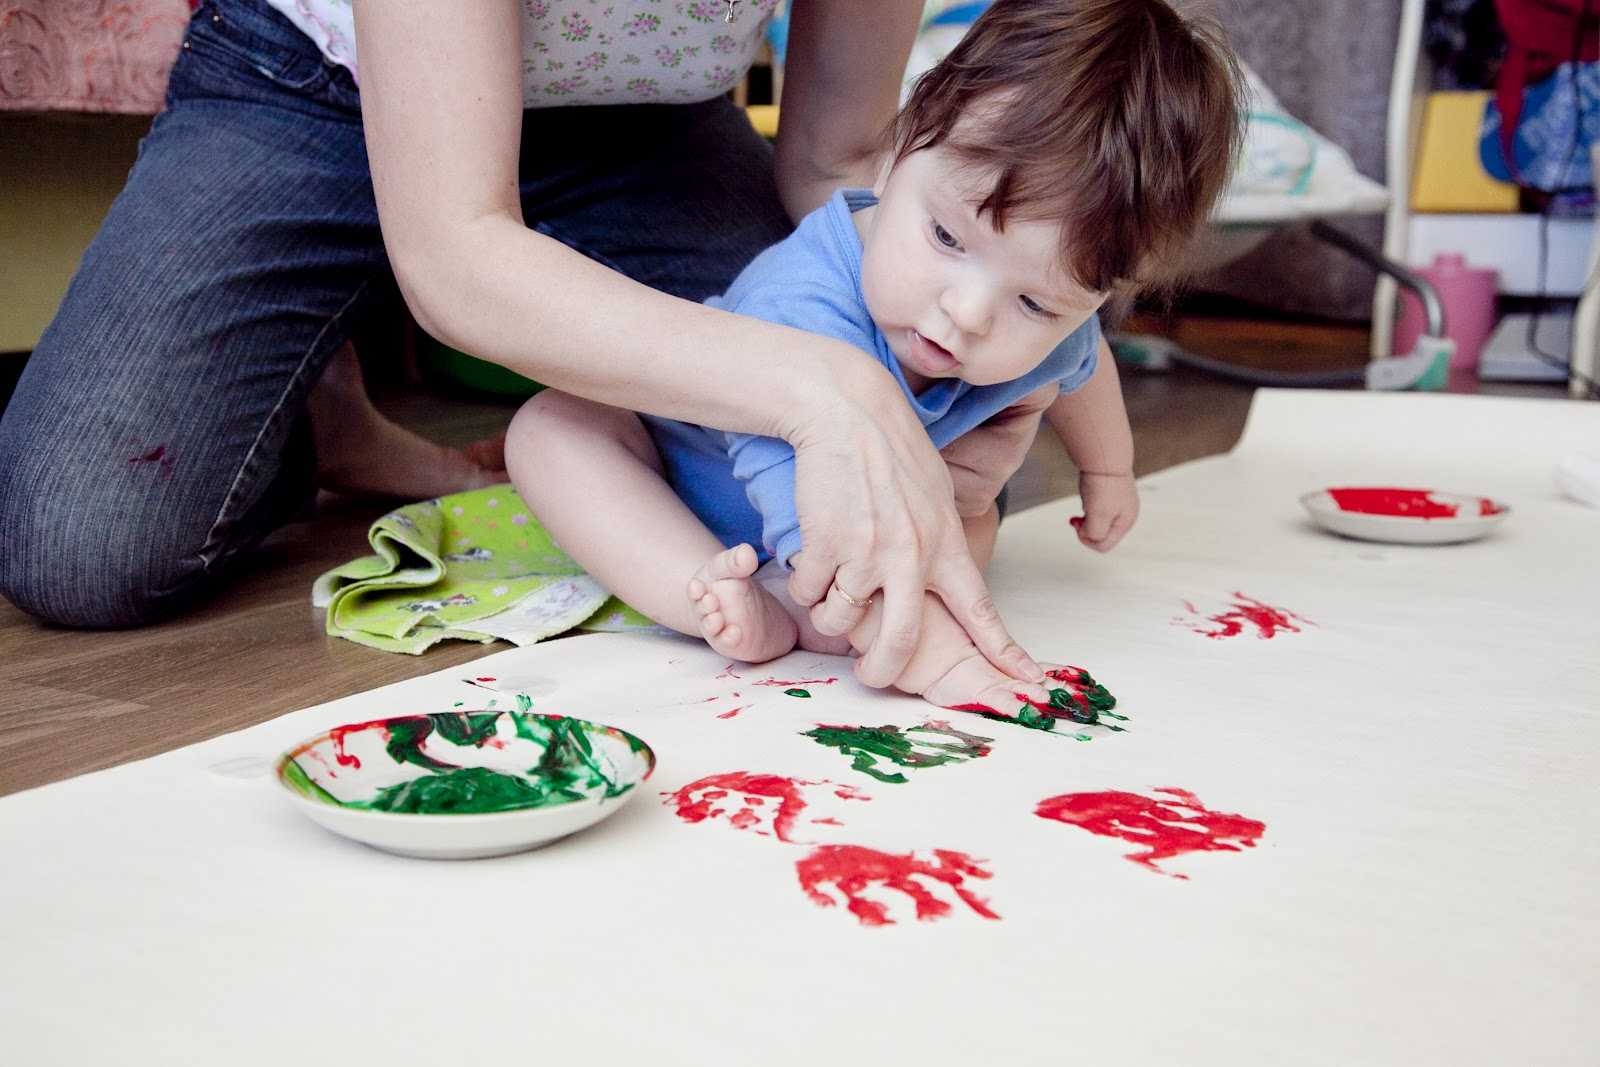 Рисование пальчиками (45 идей для детей) | семейная кучка